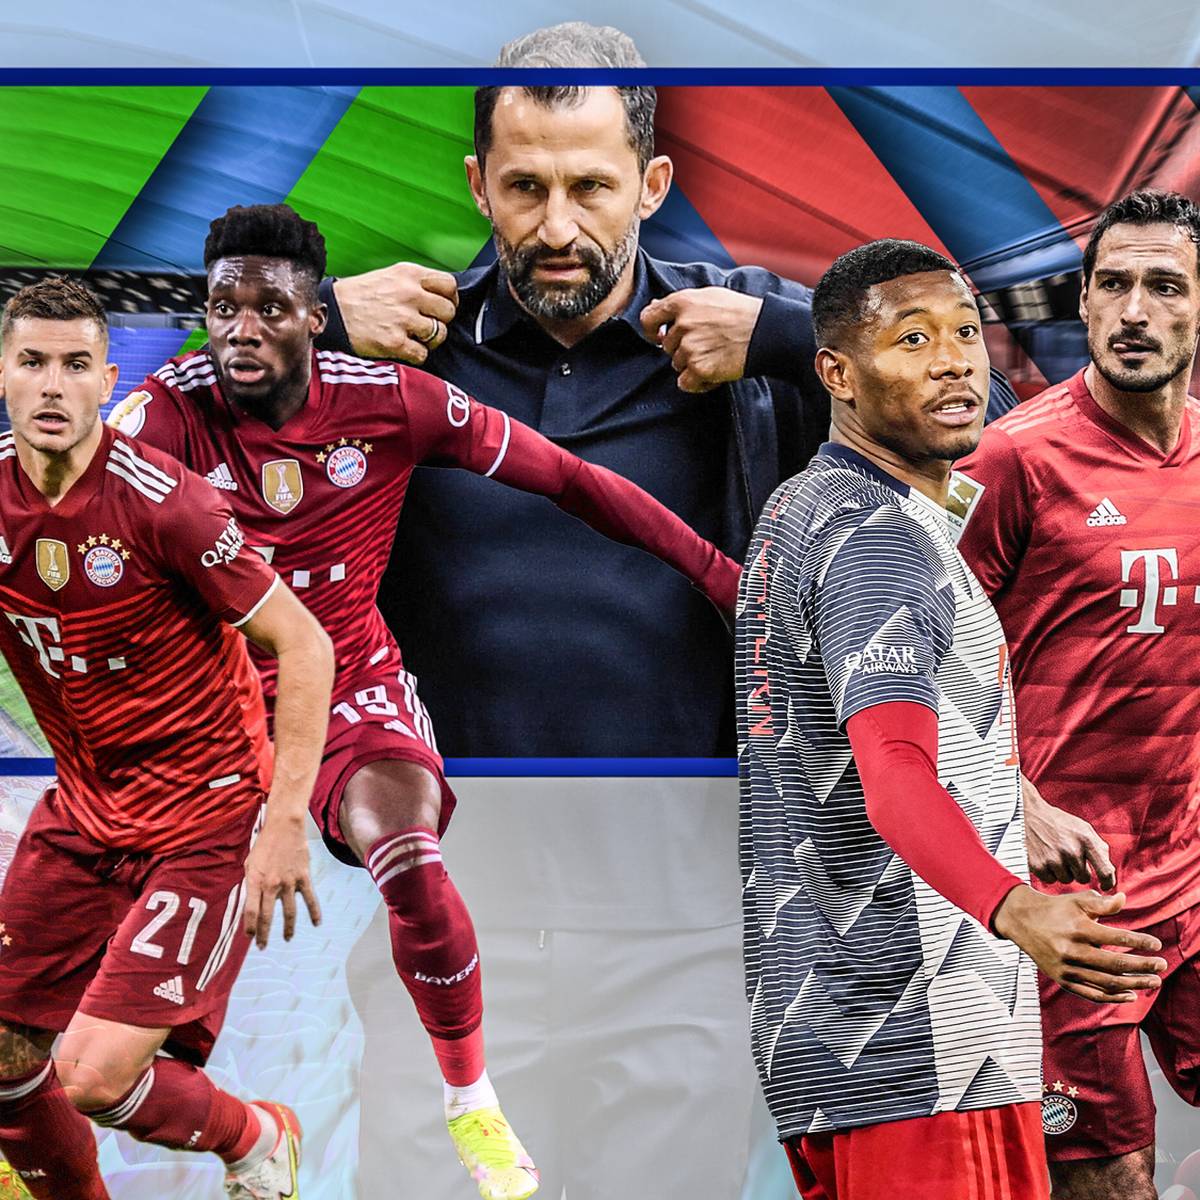 Hasan Salihamidzic gelingt mit Sadio Mané ein echter Coup beim FC Bayern. SPORT1 blickt auf die Transferbilanz des Sportvorstands.